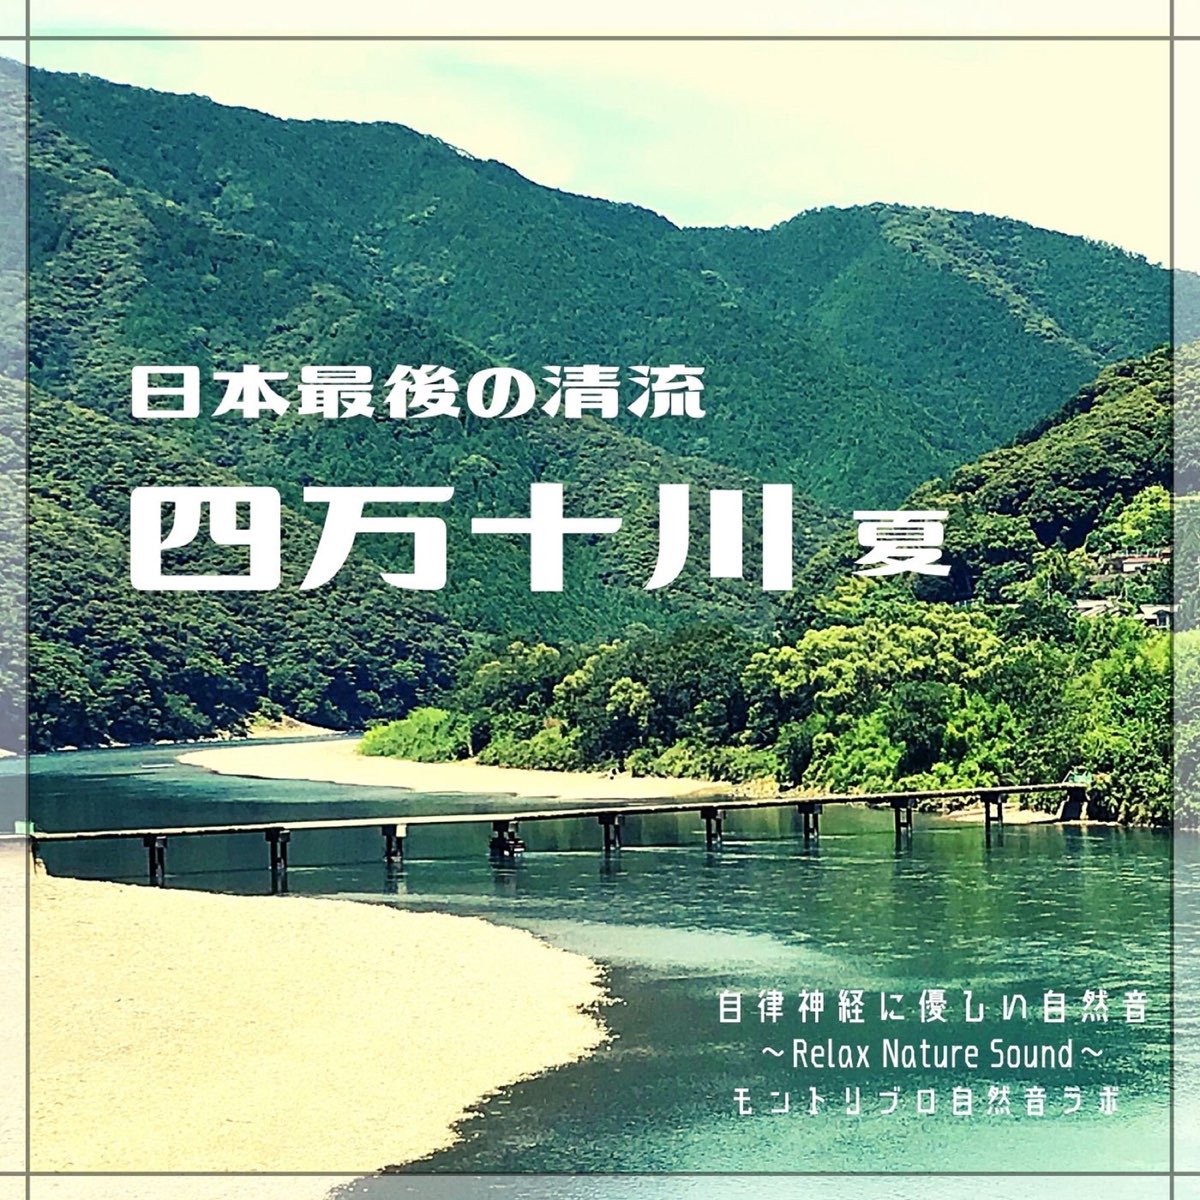 Apple Music 上モントリブロ自然音ラボ的专辑 日本最後の清流四万十川夏自律神経に優しい自然音relax Nature Sound